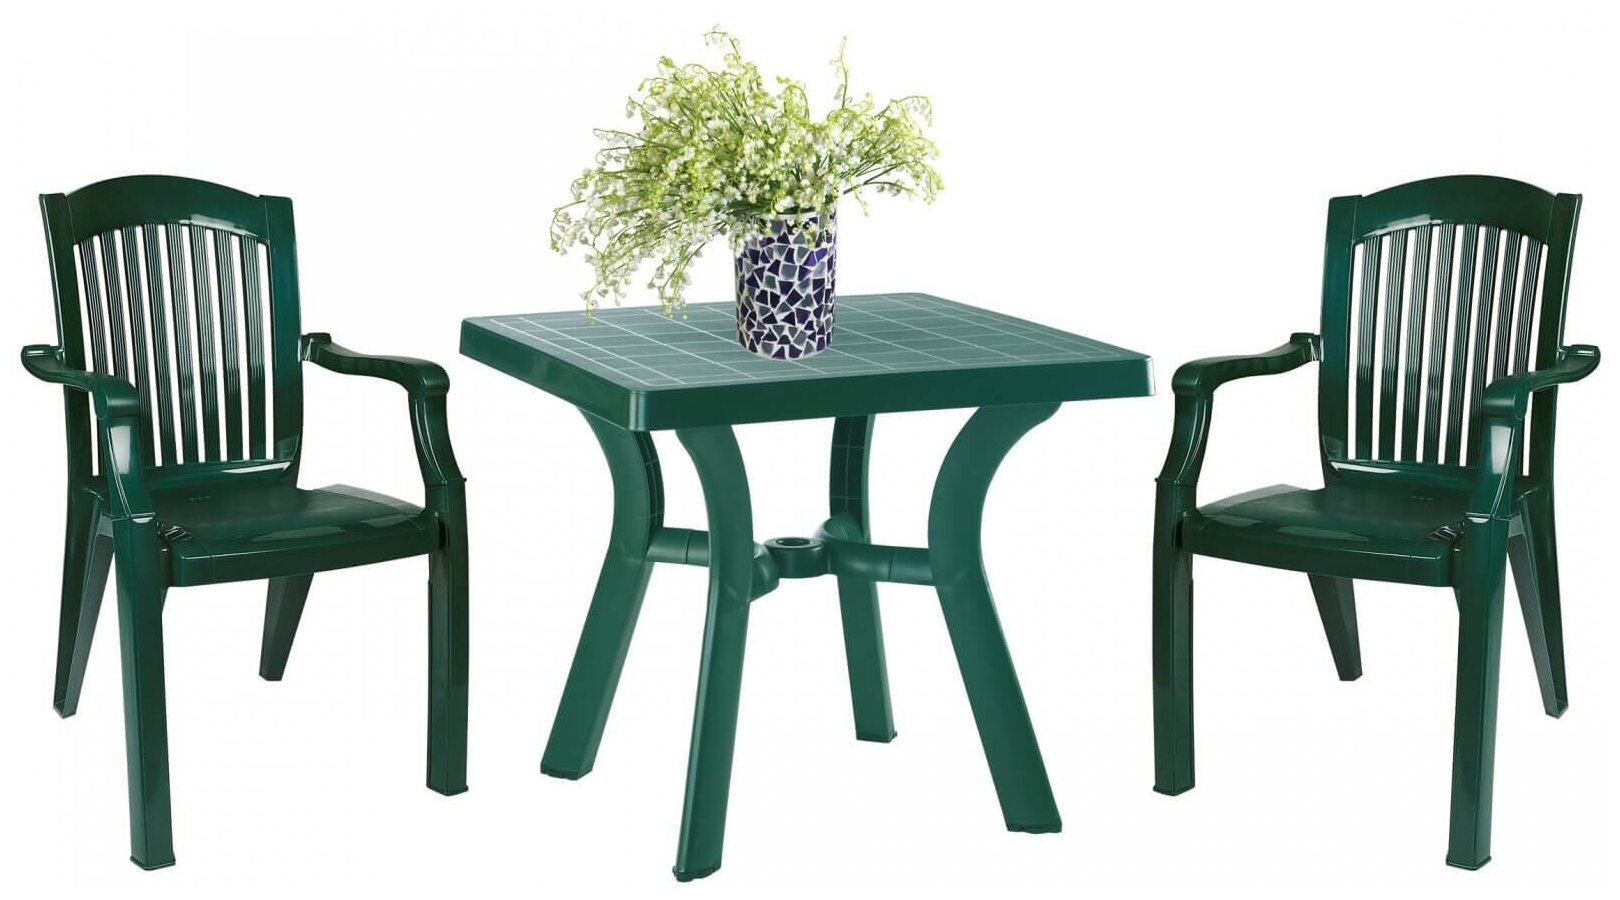 Комплект пластиковой мебели Viva Classic, Siesta Garden, зеленый